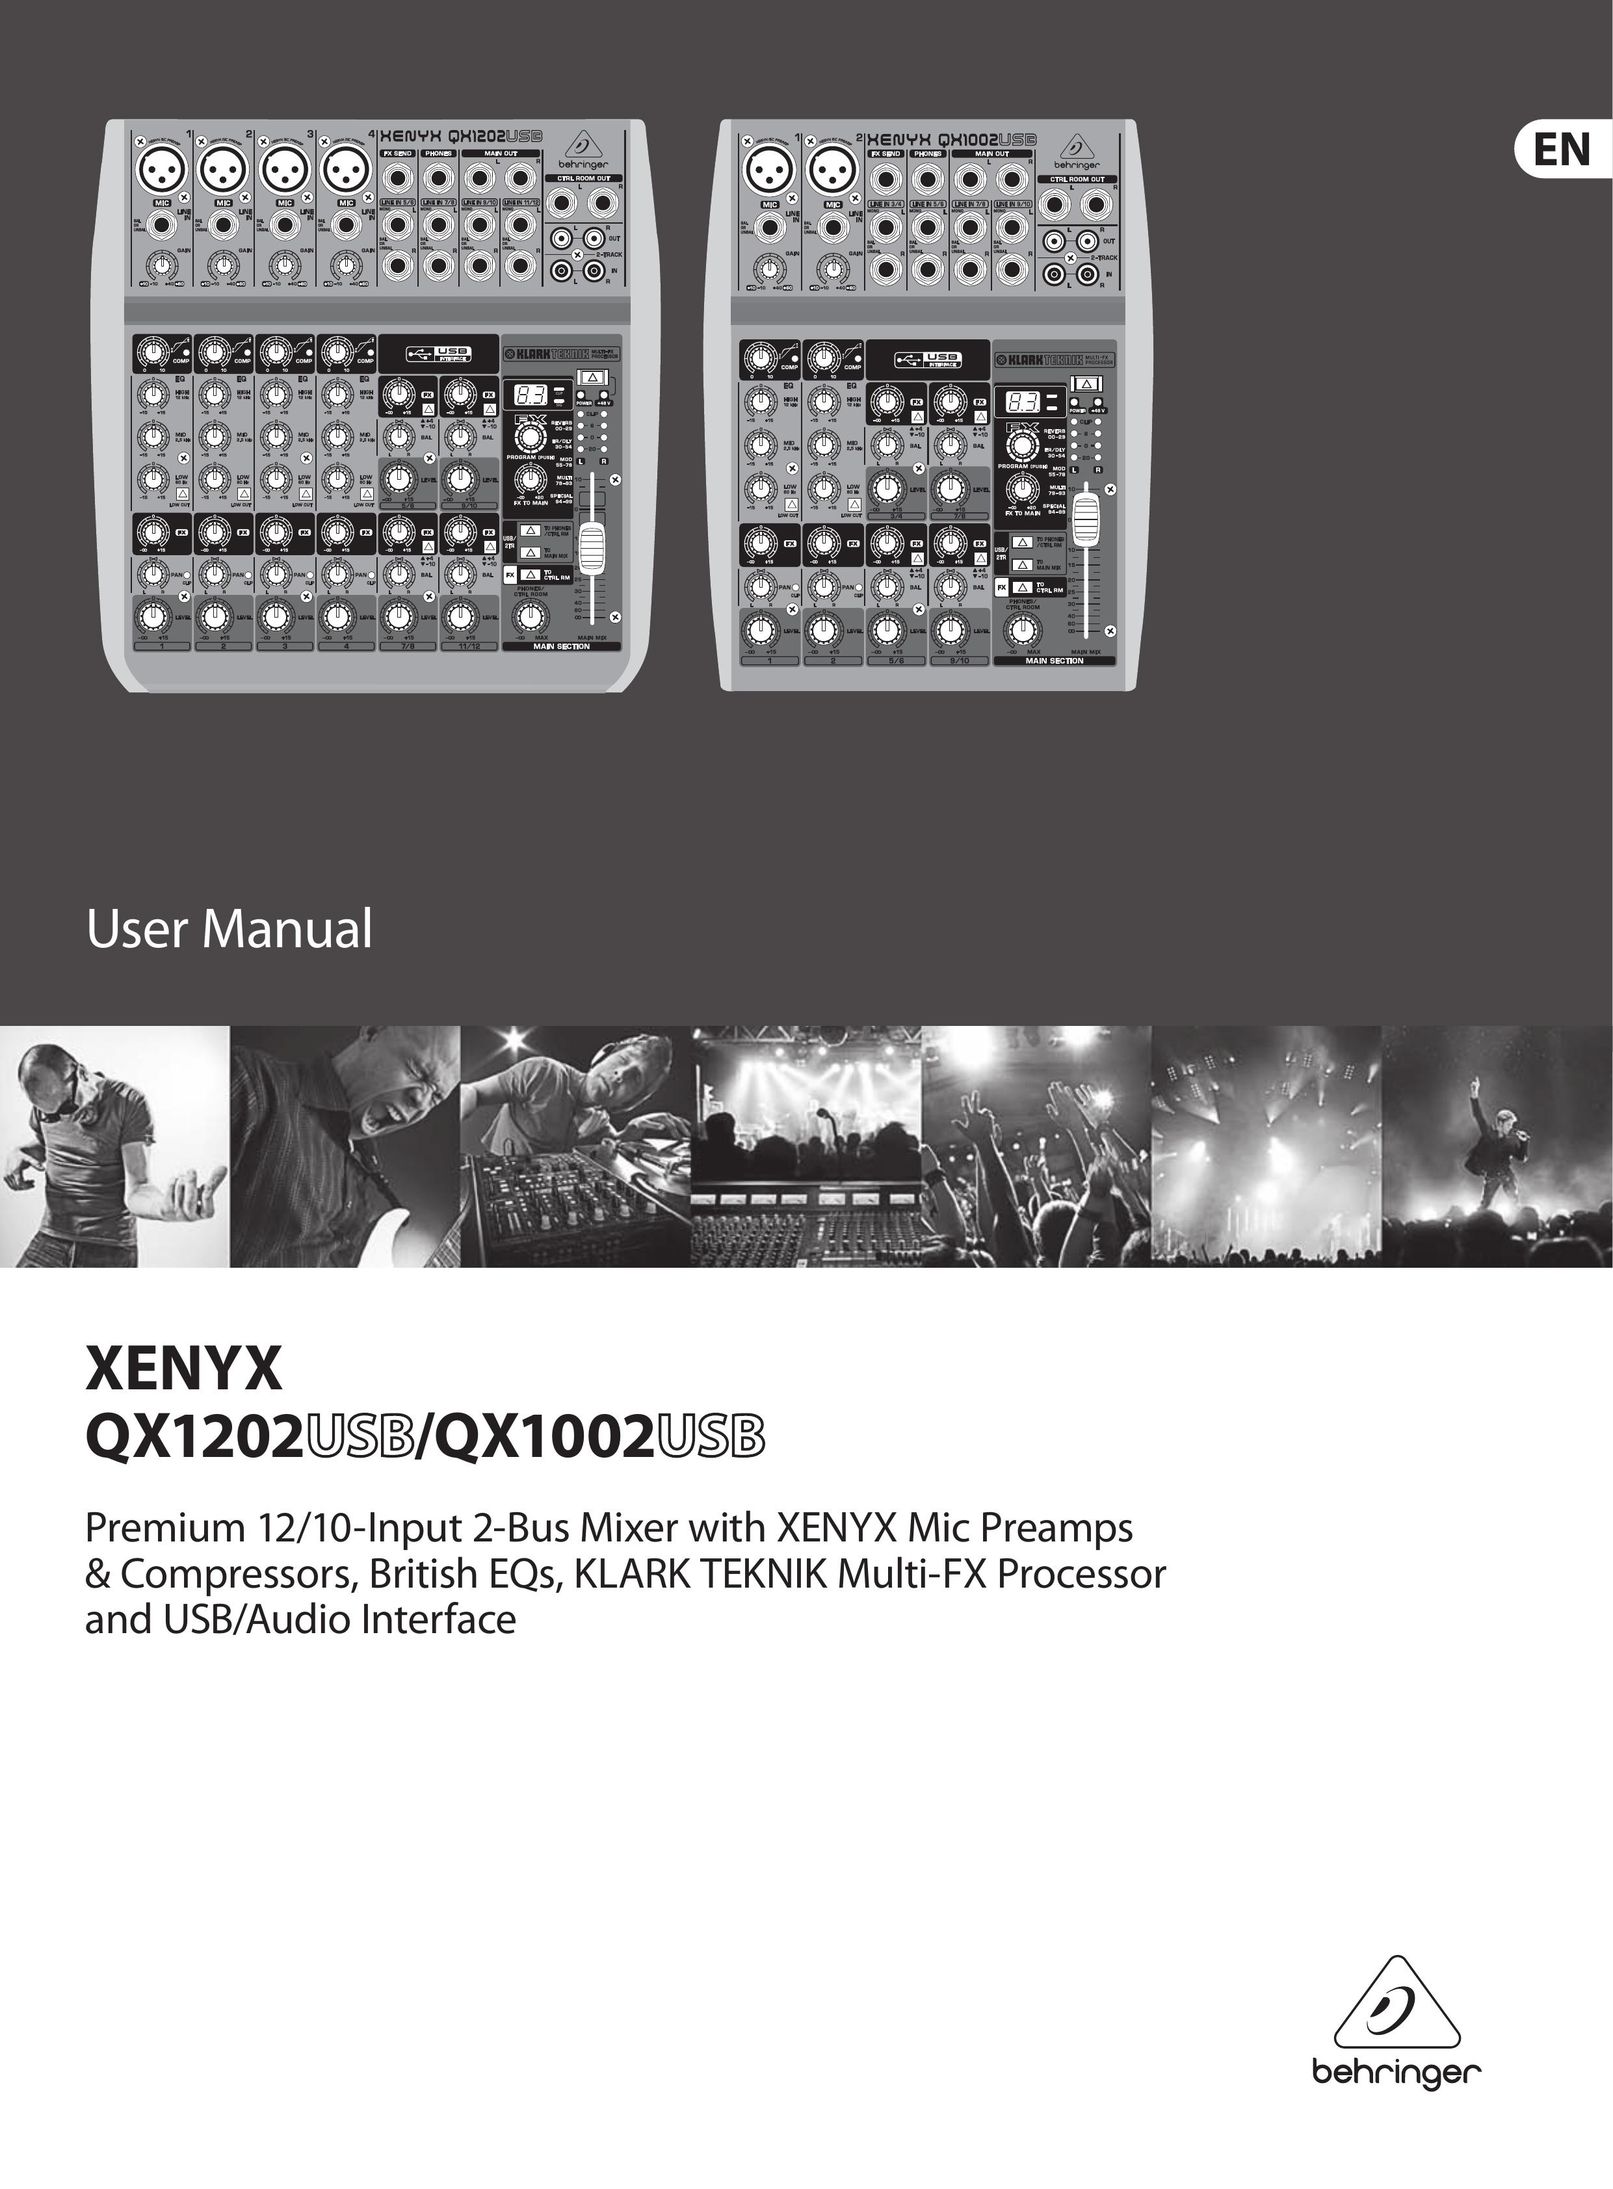 Behringer XENYX QX1202 Mixer User Manual